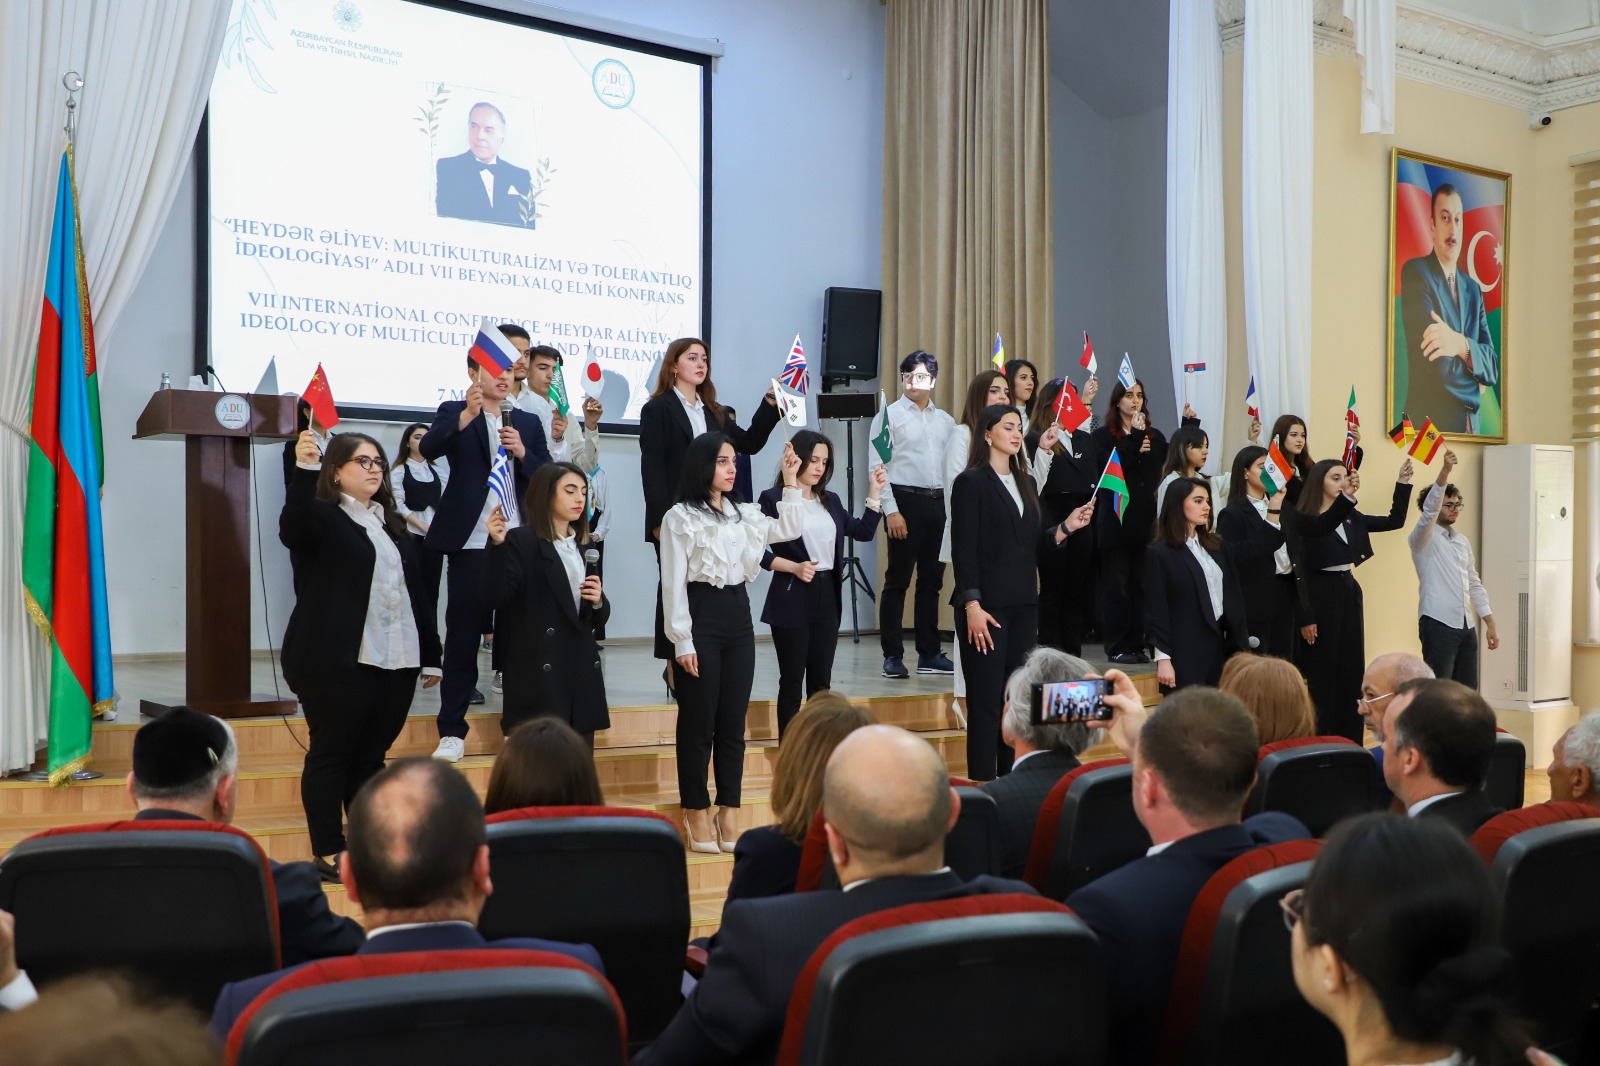 “Heydər Əliyev: multikulturalizm və tolerantliq ideologiyasi” adlı VII Beynəlxalq elmi konfrans